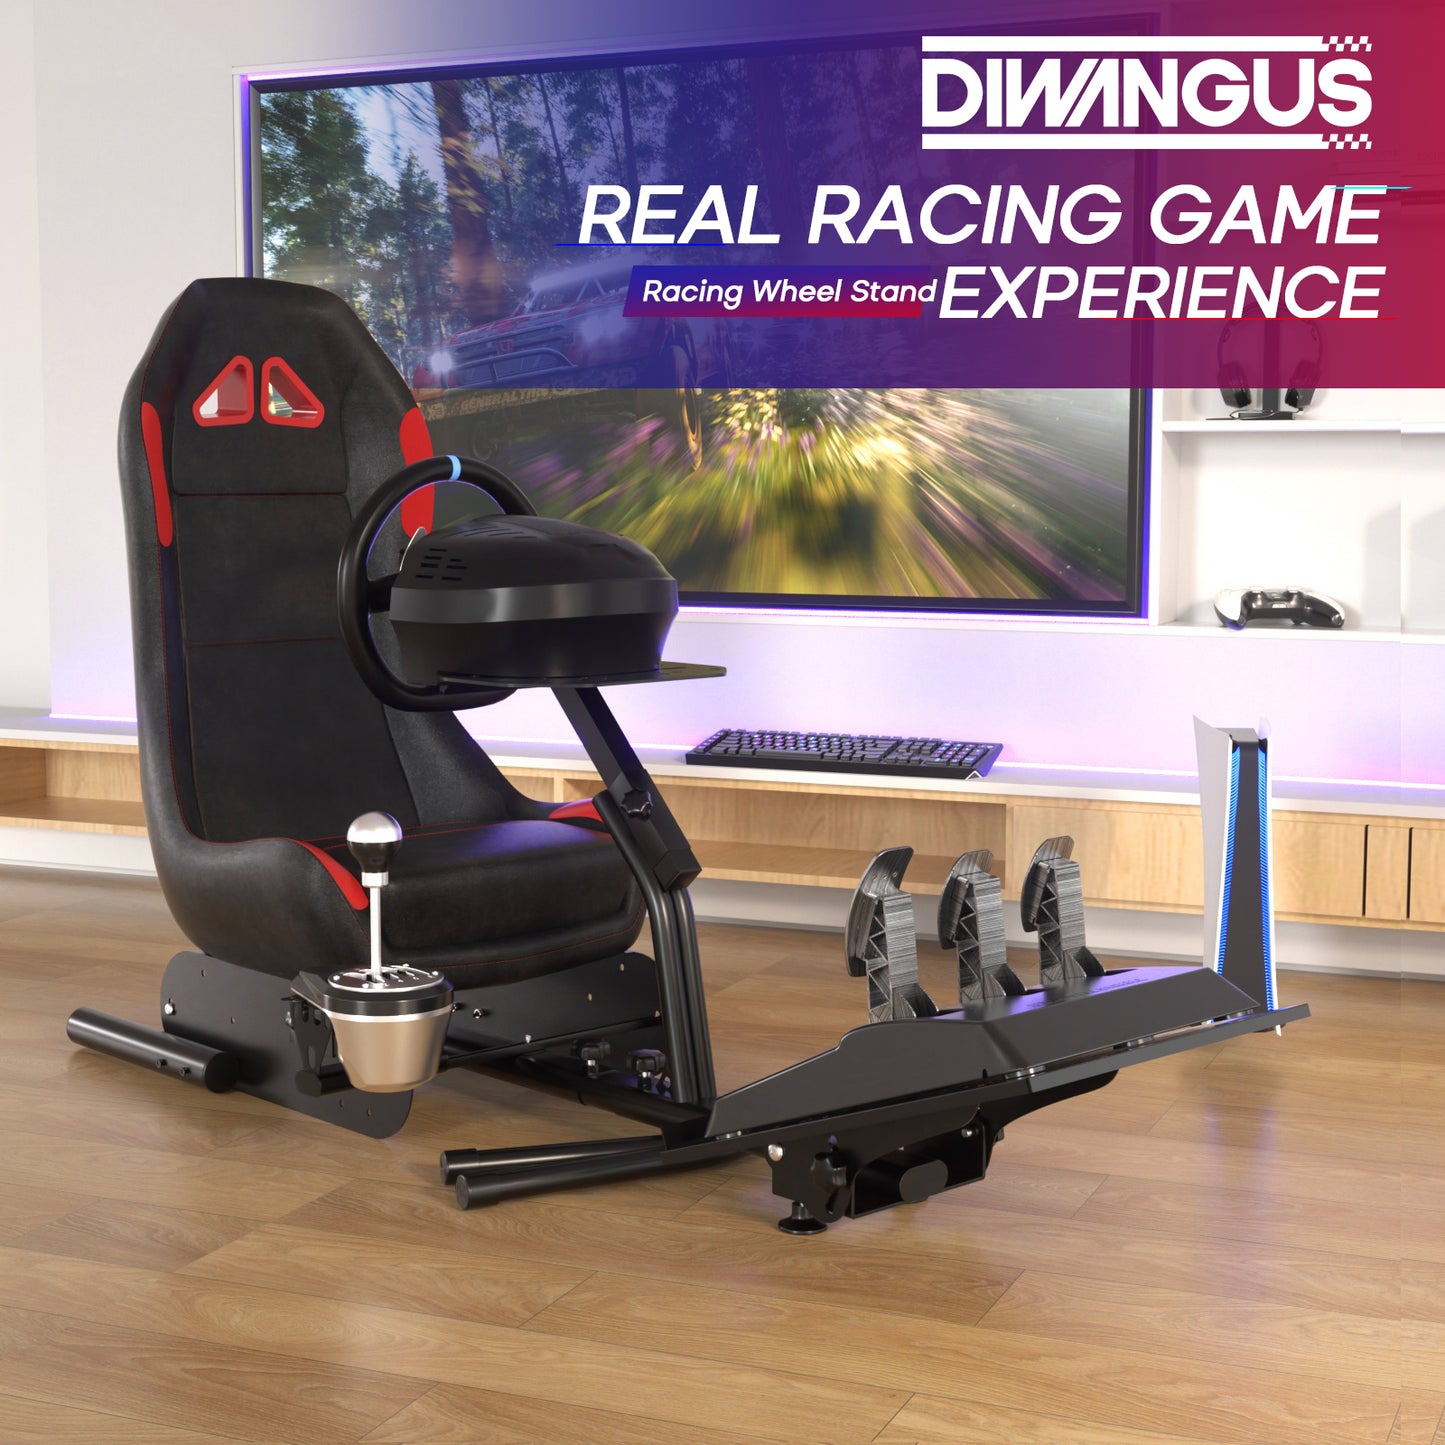 D306X racing simulator cockpit gaming display